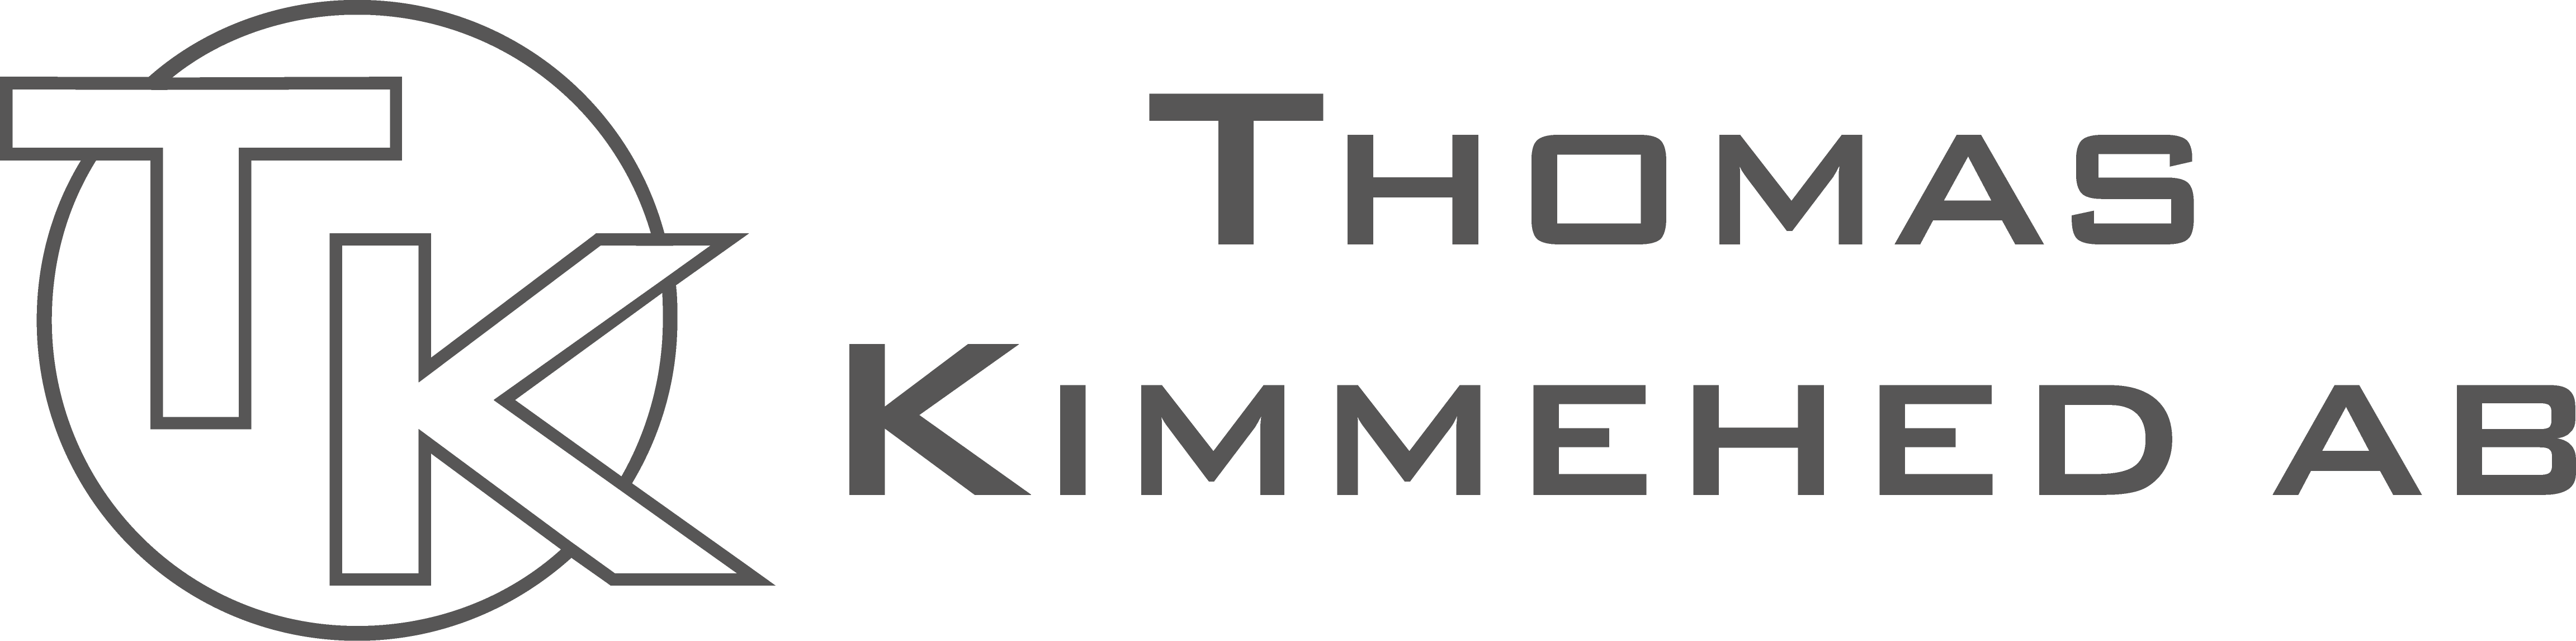 Thomas Kimmehed AB